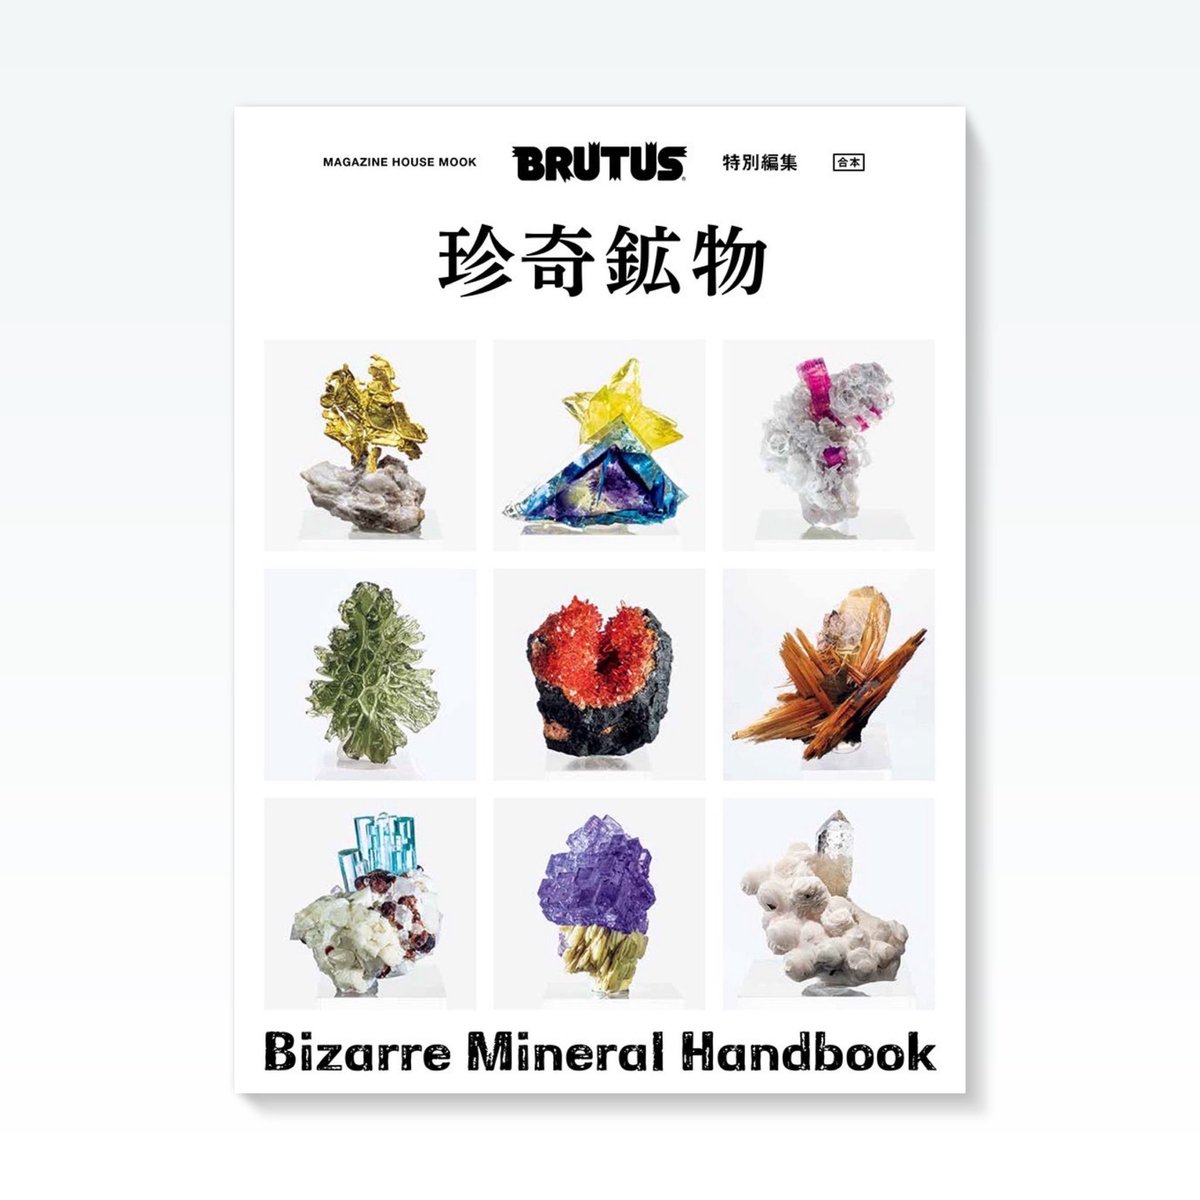 BRUTUS「珍奇鉱物」と「珍奇鉱物2」がまとまった「合本　珍奇鉱物」が発売になります。30ページ以上に及ぶ美しい鉱物図鑑をはじめ、世界的なコレクターの取材や、ミネラルショーレポート、鉱物採掘記、飾り方までが一冊に詰まっています。

brutus.jp/mook/issue/biz…

#fineminerals #minerals #brutus